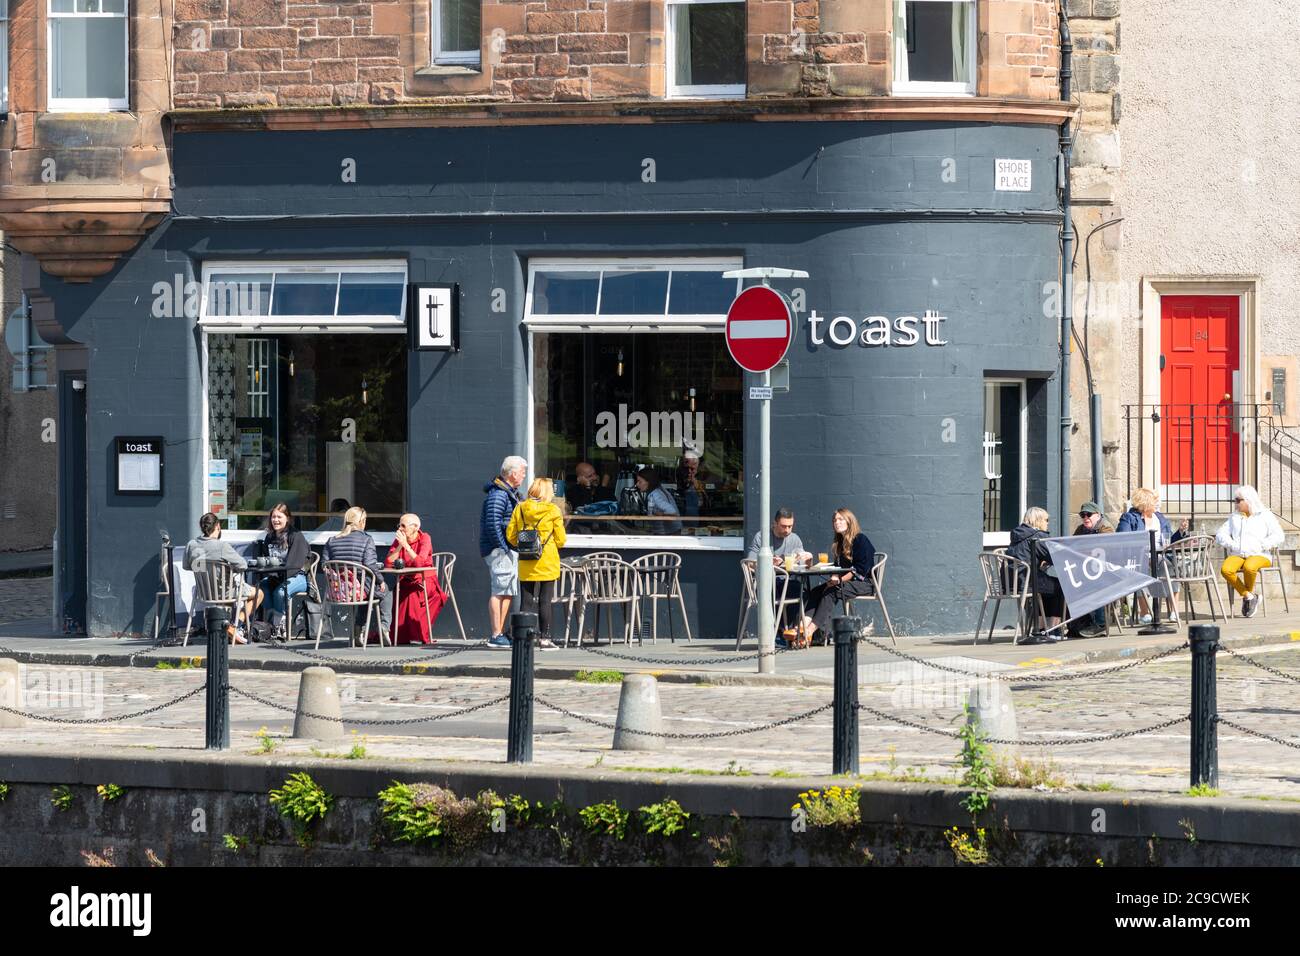 The Shore of Leith - Toast Weincafé - Menschen sitzen an Pflaster-Tischen in der Sonne, Leith, Edinburgh, Schottland, Großbritannien Stockfoto